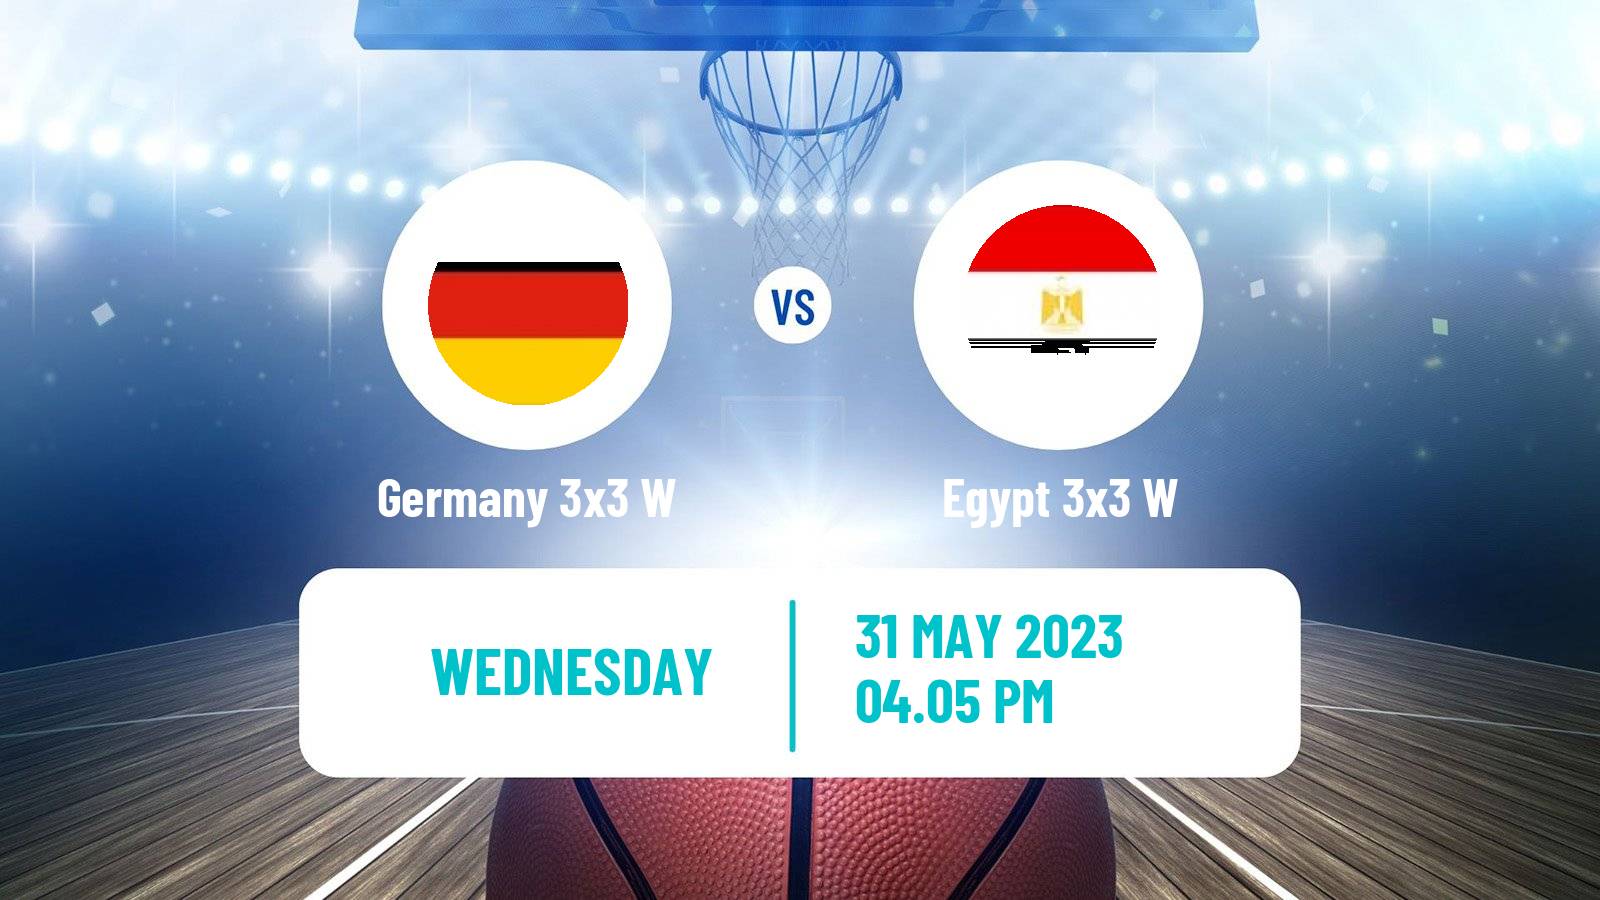 Basketball World Cup Basketball 3x3 Women Germany 3x3 W - Egypt 3x3 W